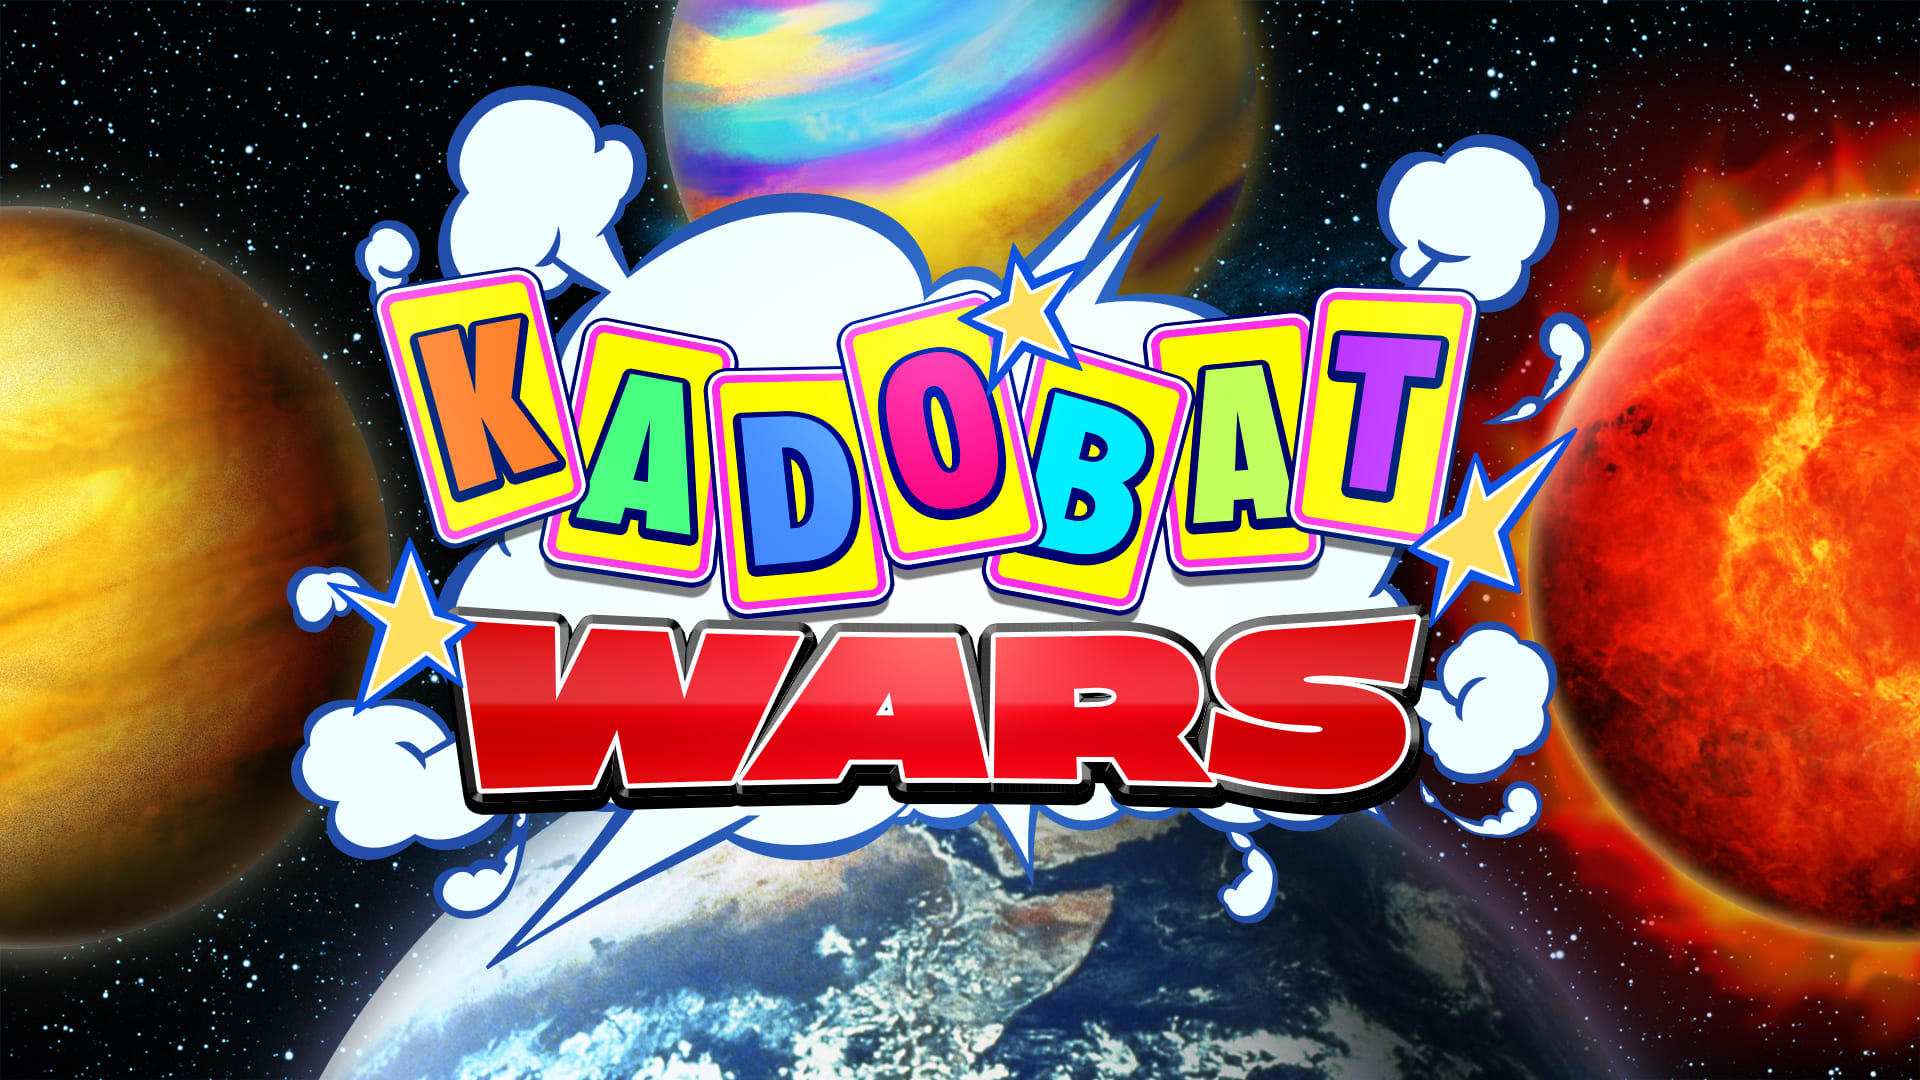 KADOBAT WARS